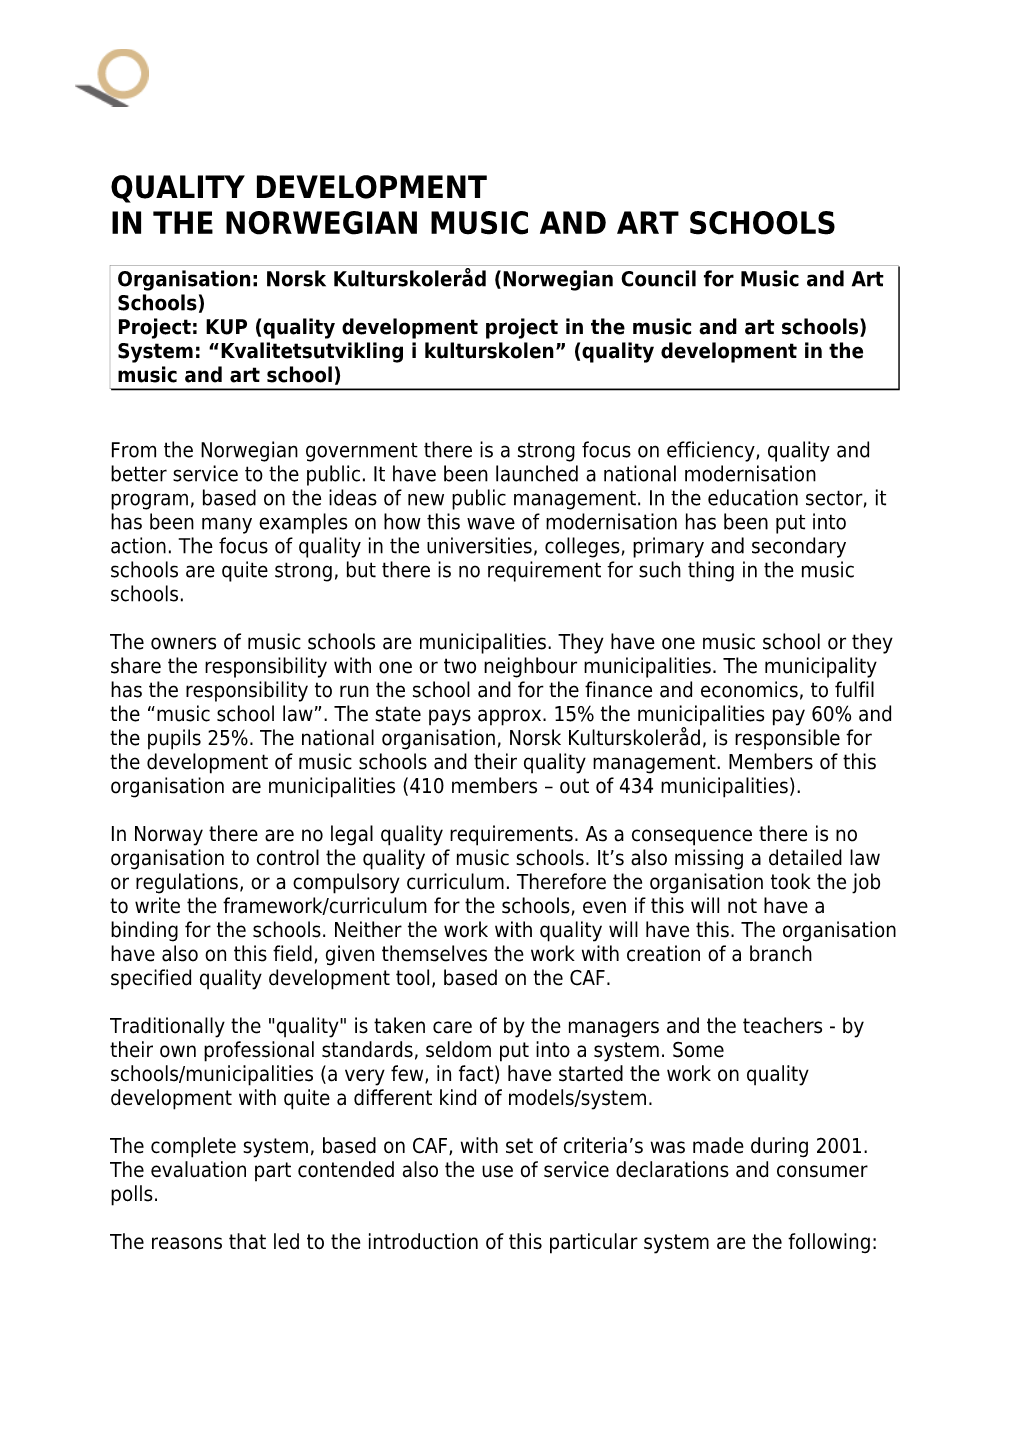 In the Norwegian Music and Art Schools